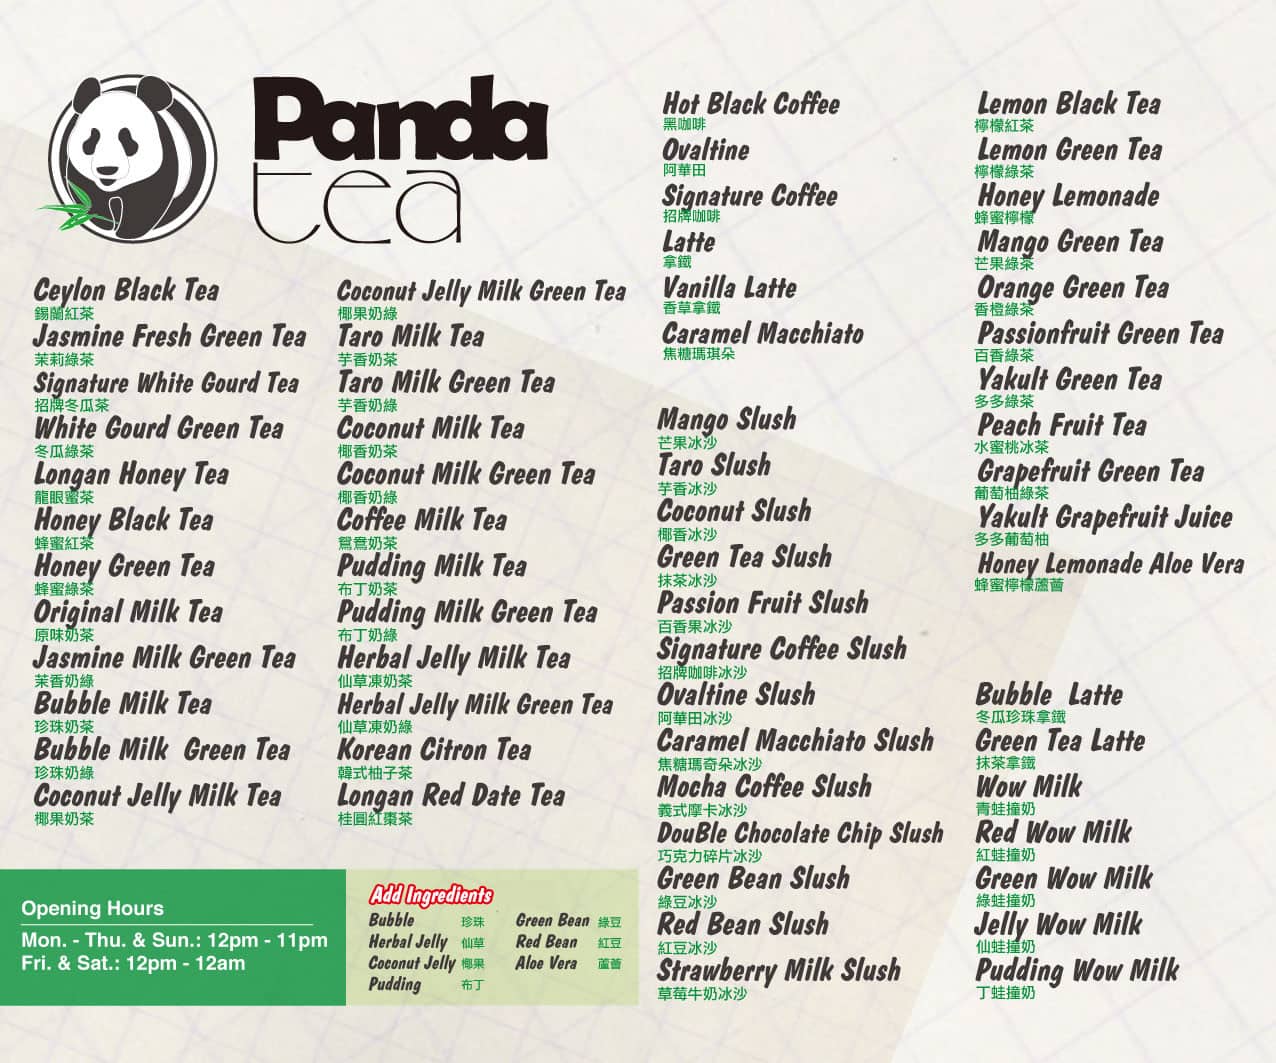 panda libre menu